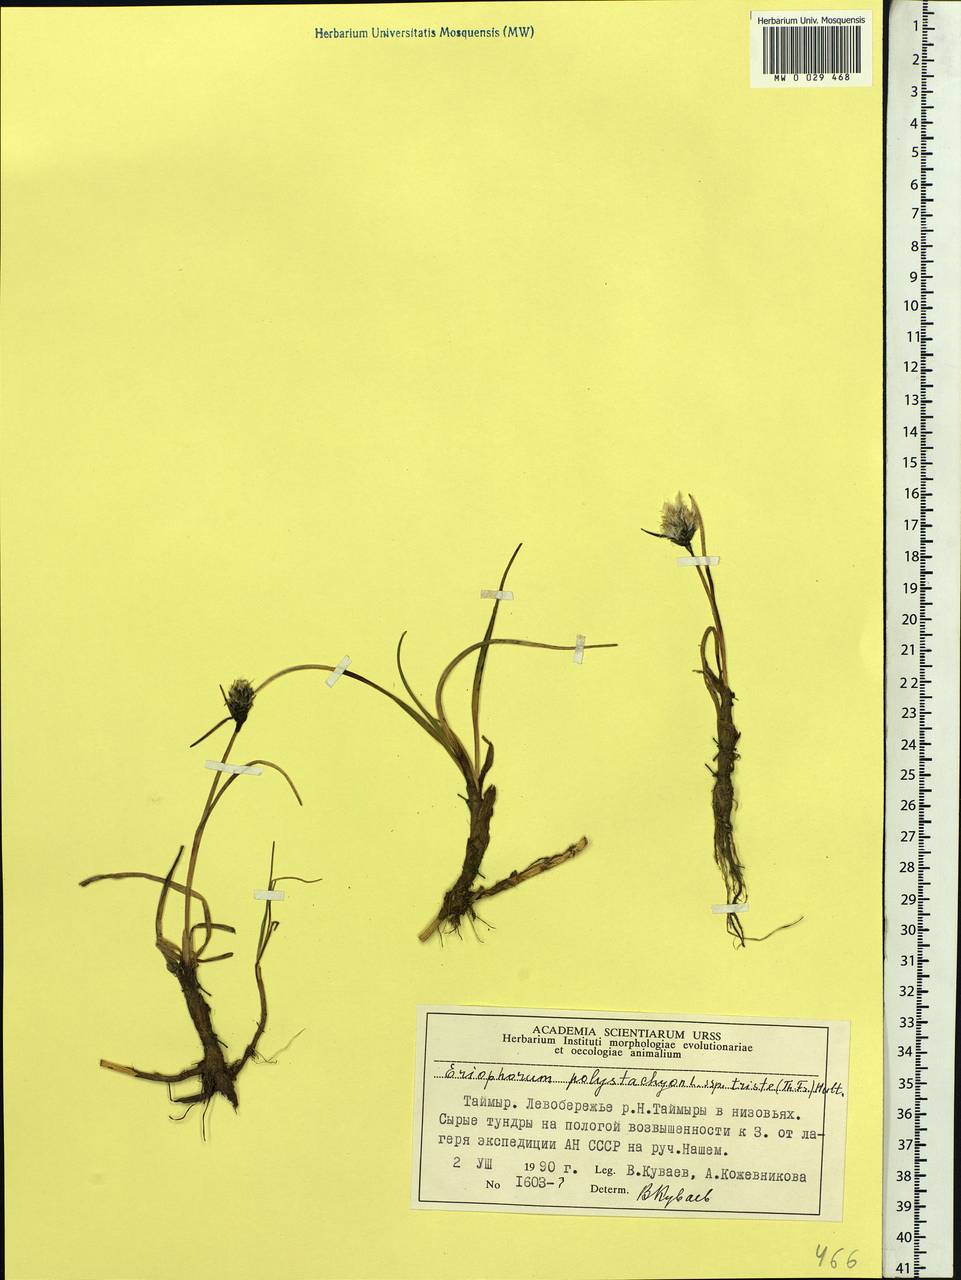 Eriophorum angustifolium subsp. triste (T.C.E.Fr.) Hultén, Siberia, Central Siberia (S3) (Russia)